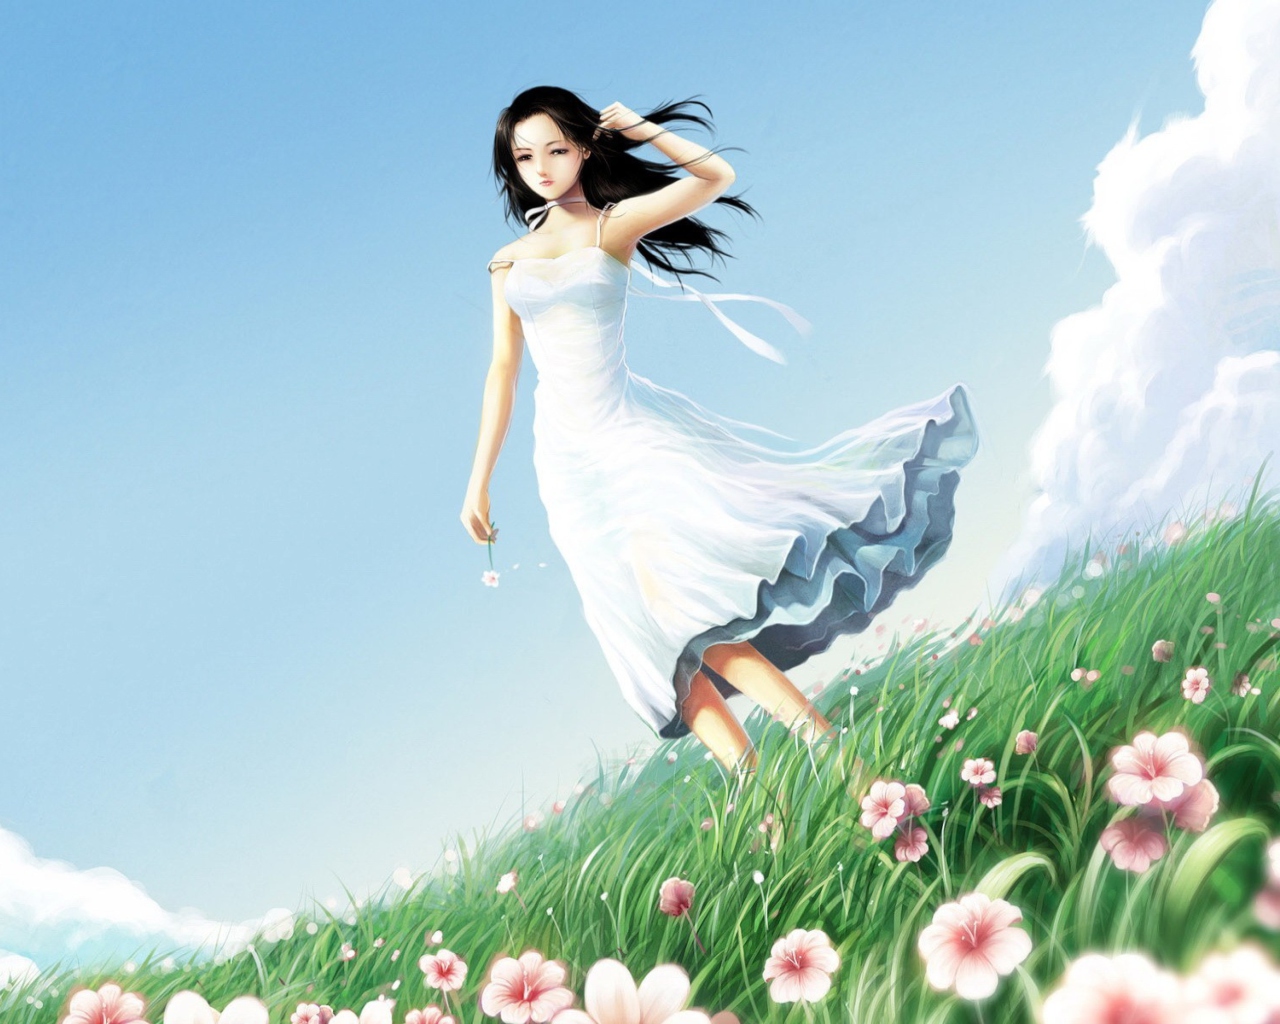 Girl In Blue Dress In Flower Field wallpaper 1280x1024